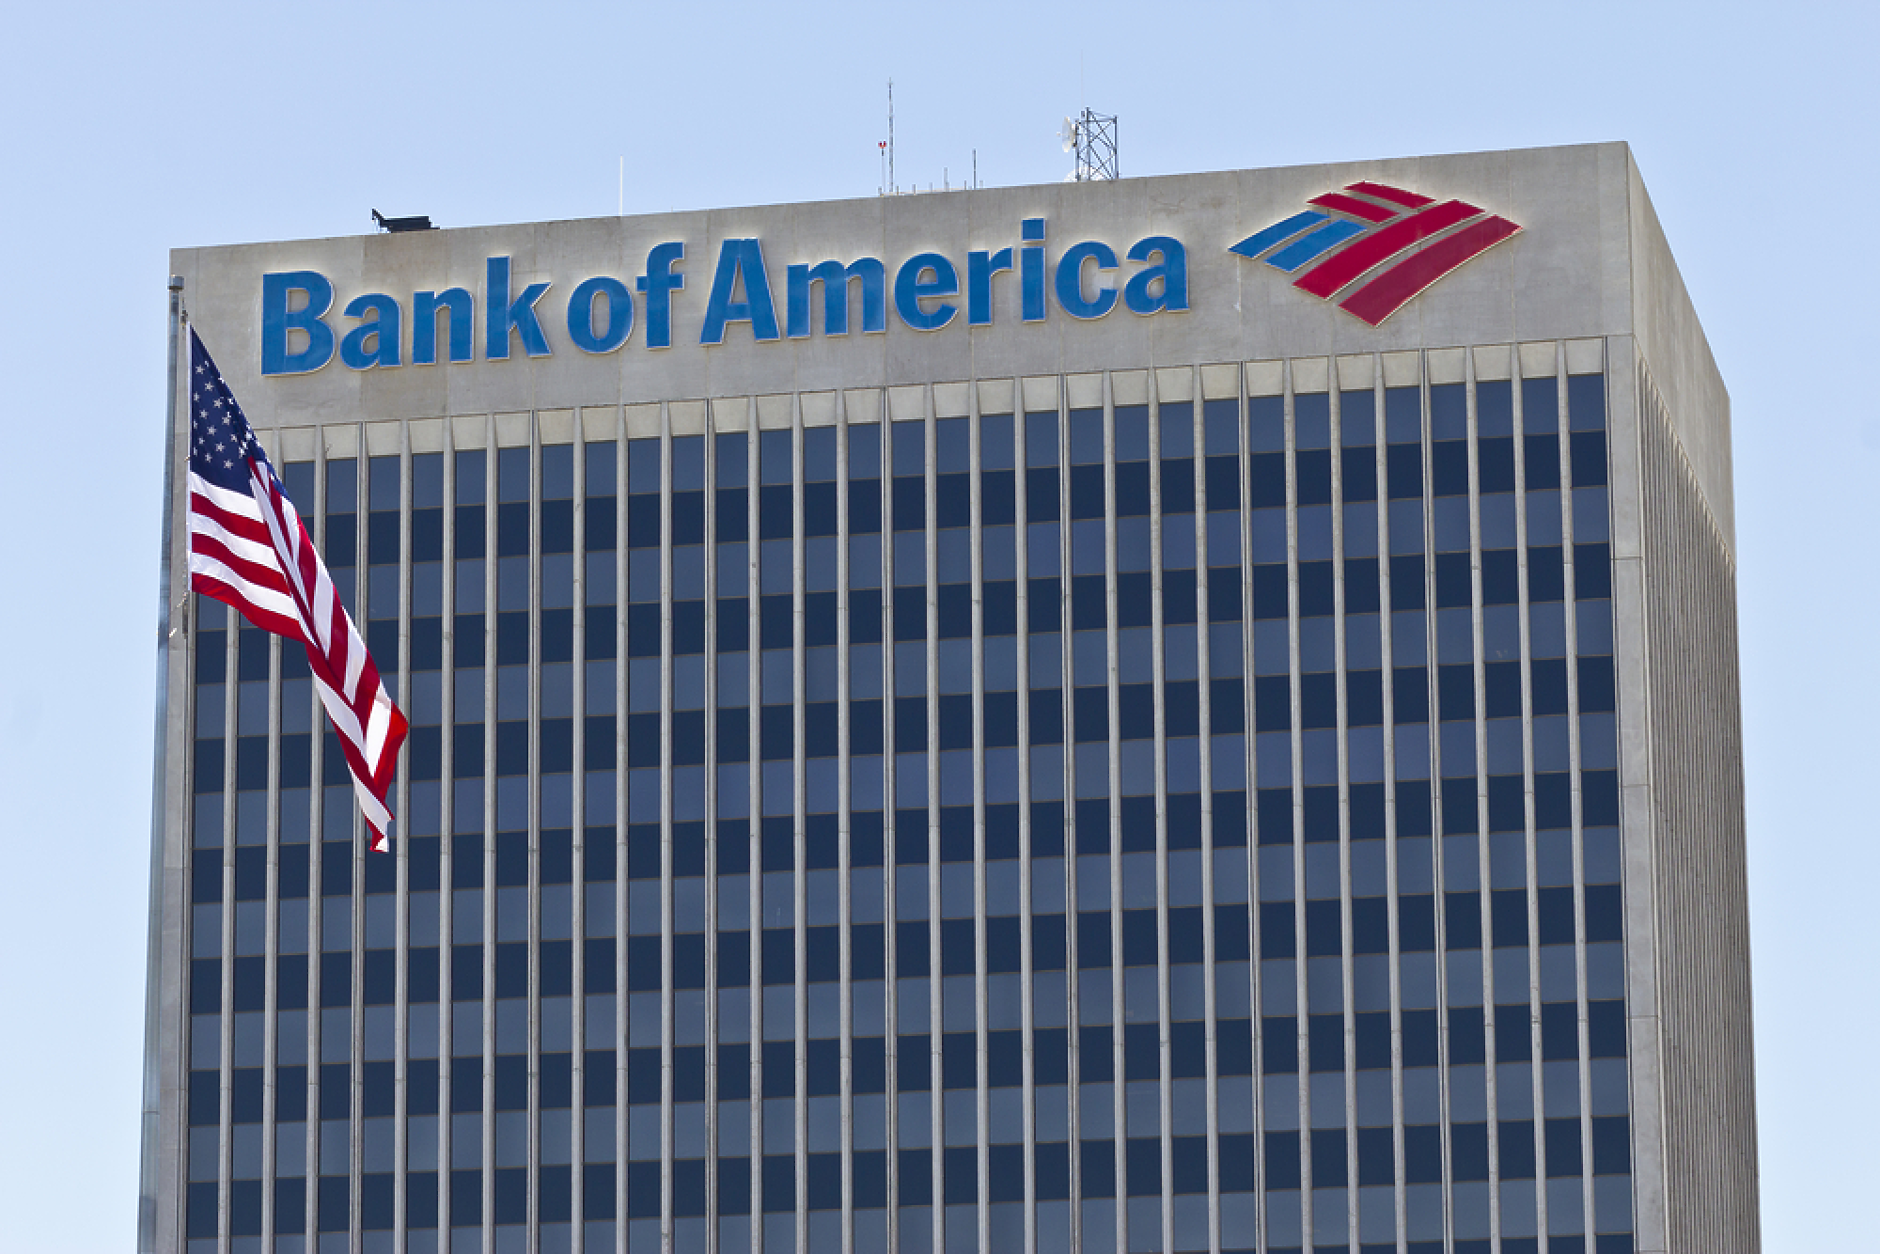  Bank of America прогнозира умерена рецесия в САЩ от второто тримесечие на 2023 г.